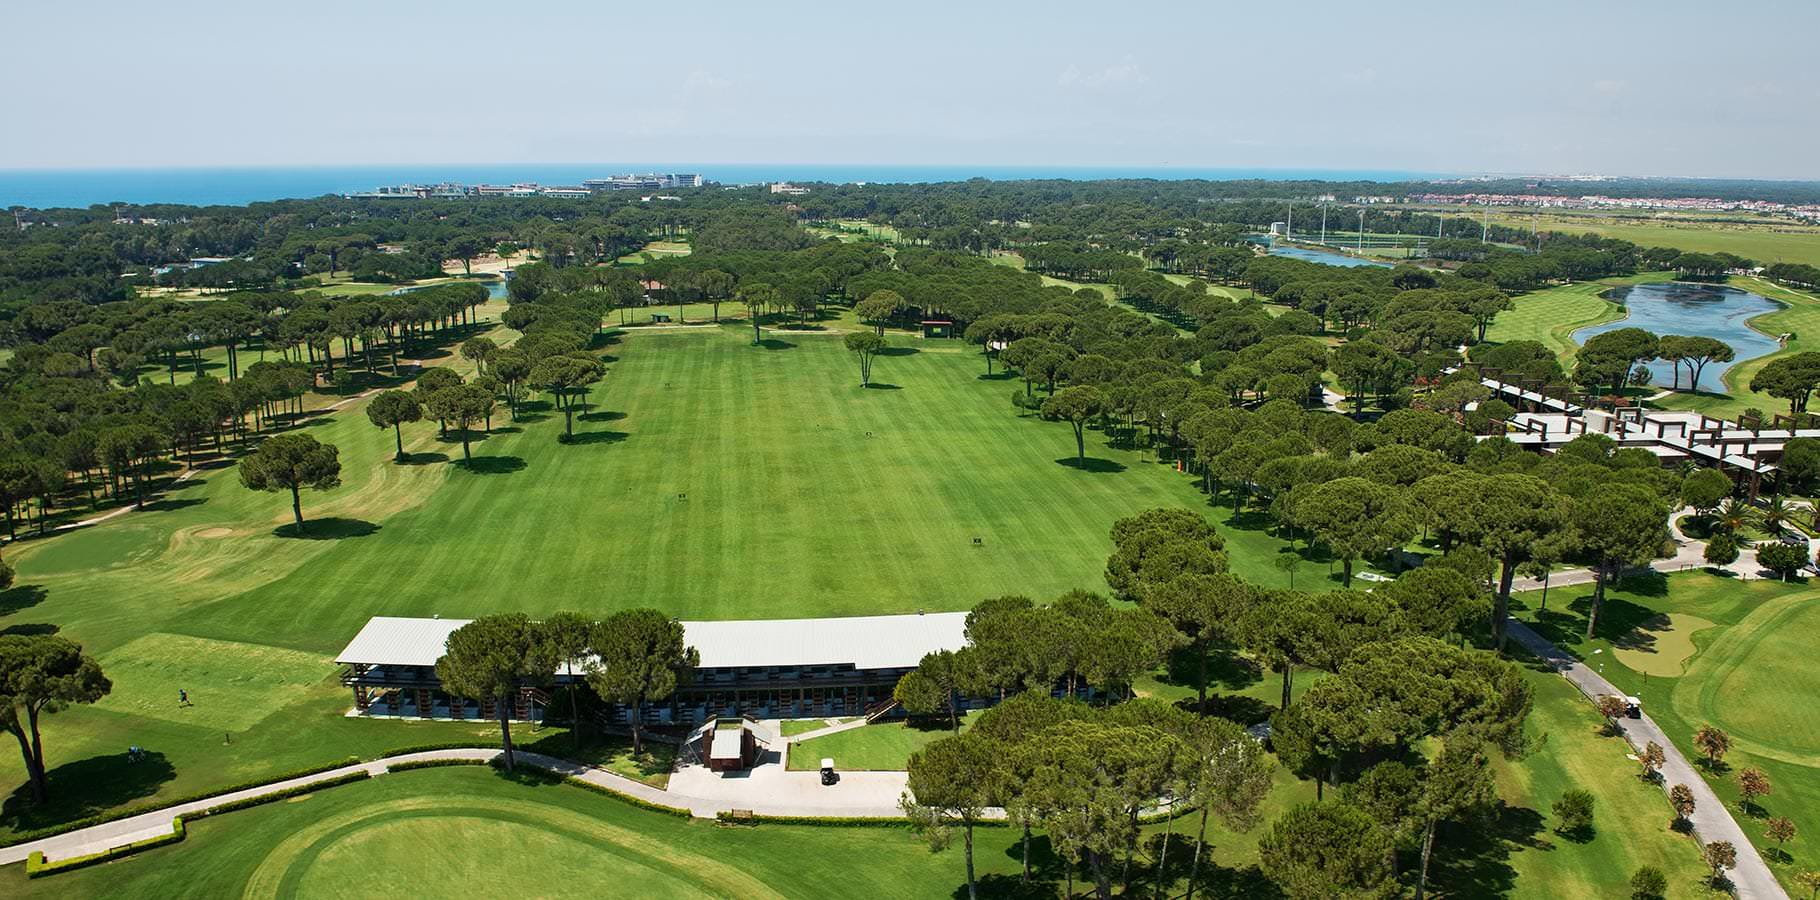 Gloria Golf Club Air View